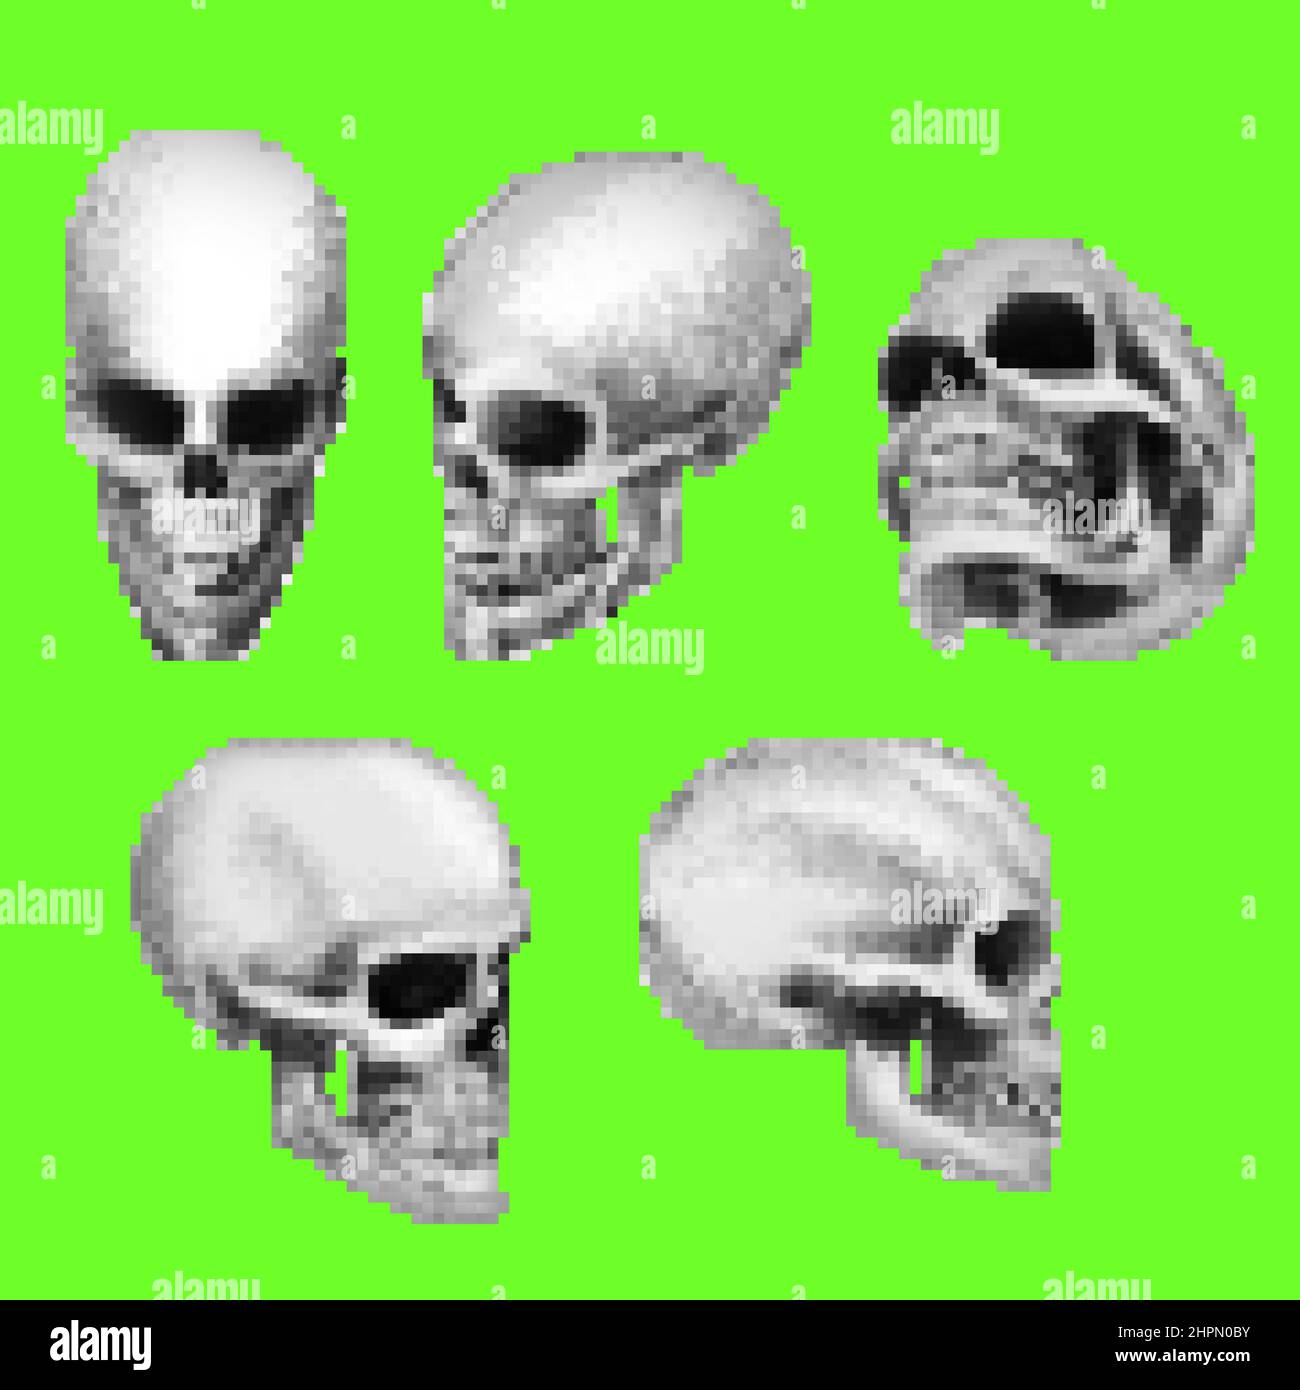 Pixel-Artwork-Illustration des menschlichen Schädels in verschiedenen Positionen auf grünem Bildschirmhintergrund. Stockfoto